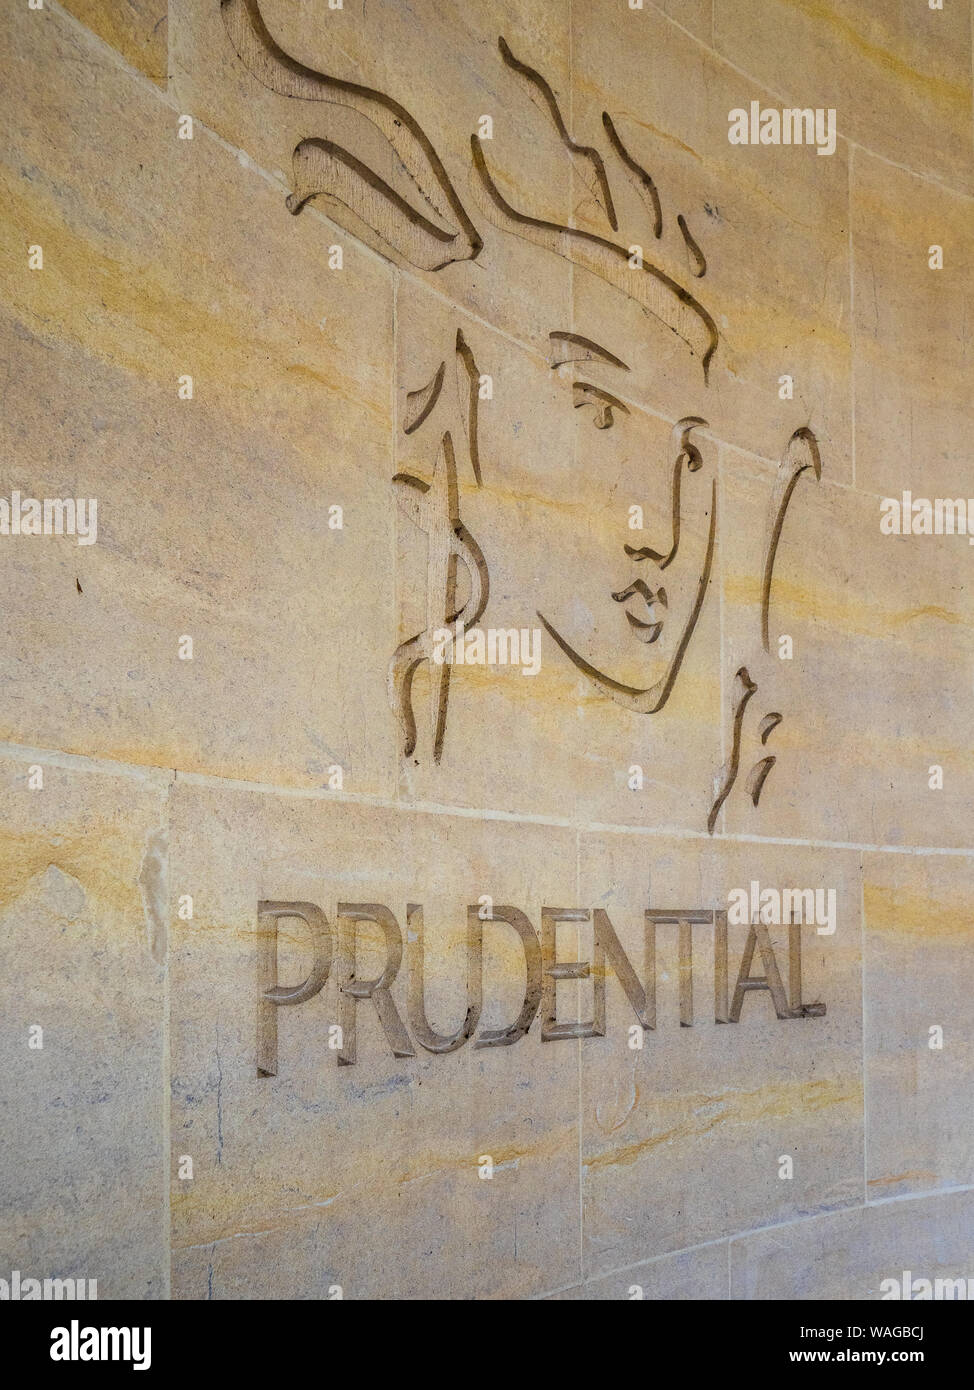 Logo Prudential London - logo de la Prudential Life Insurance and Financial Services Company gravé dans le mur d'un bâtiment du centre de Londres au Royaume-Uni Banque D'Images